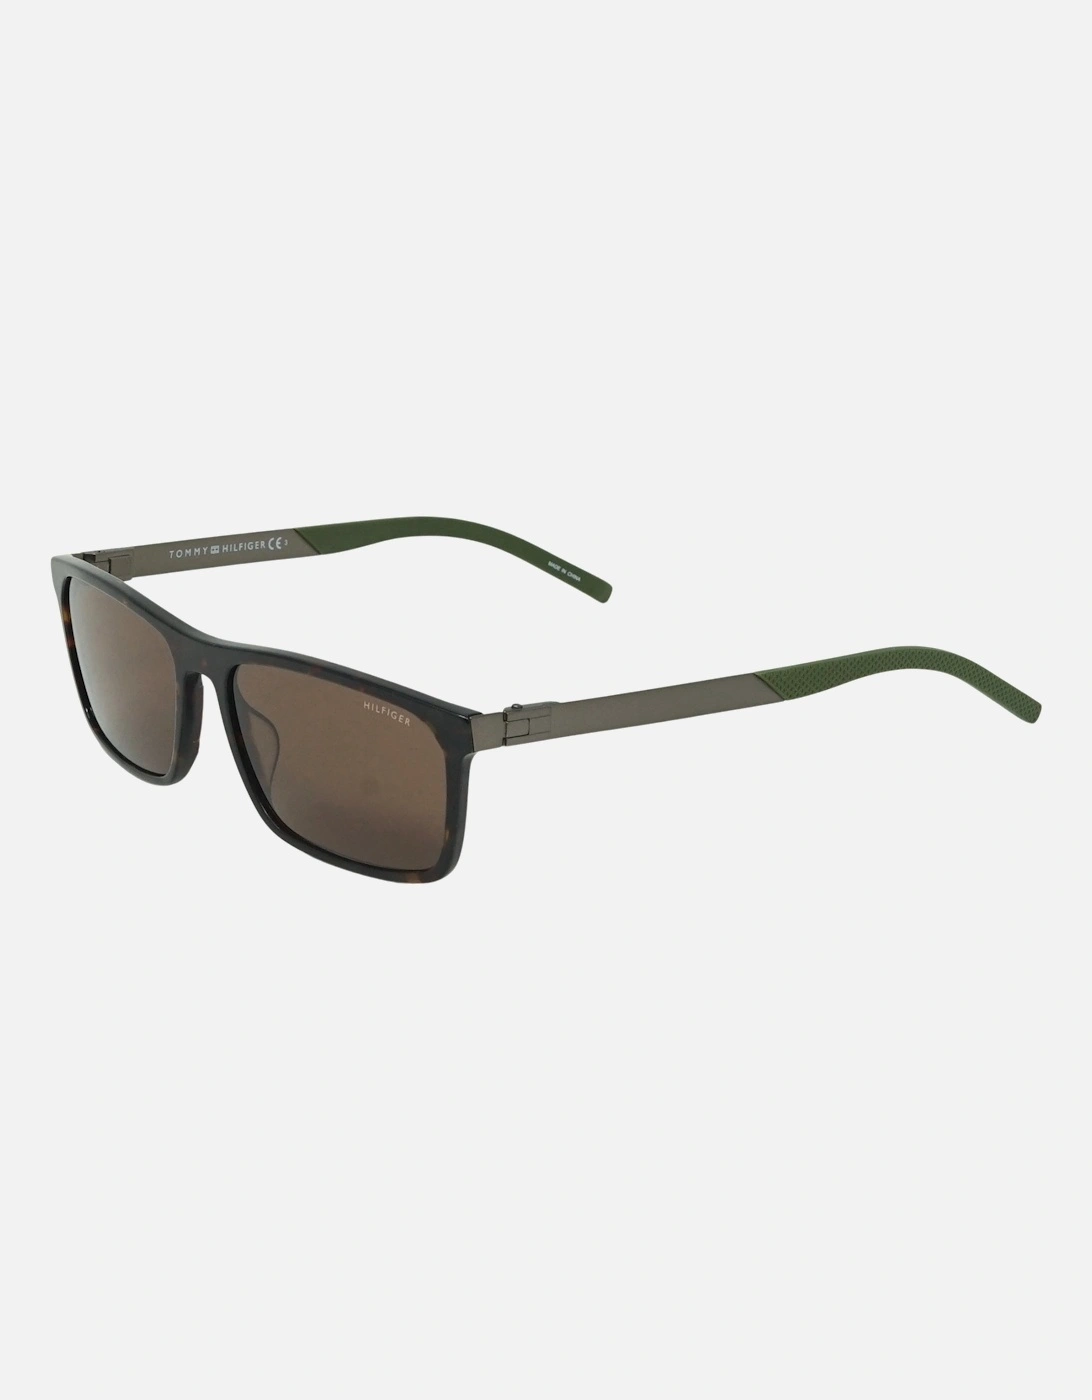 TH1799 0086 70 Silver Sunglasses